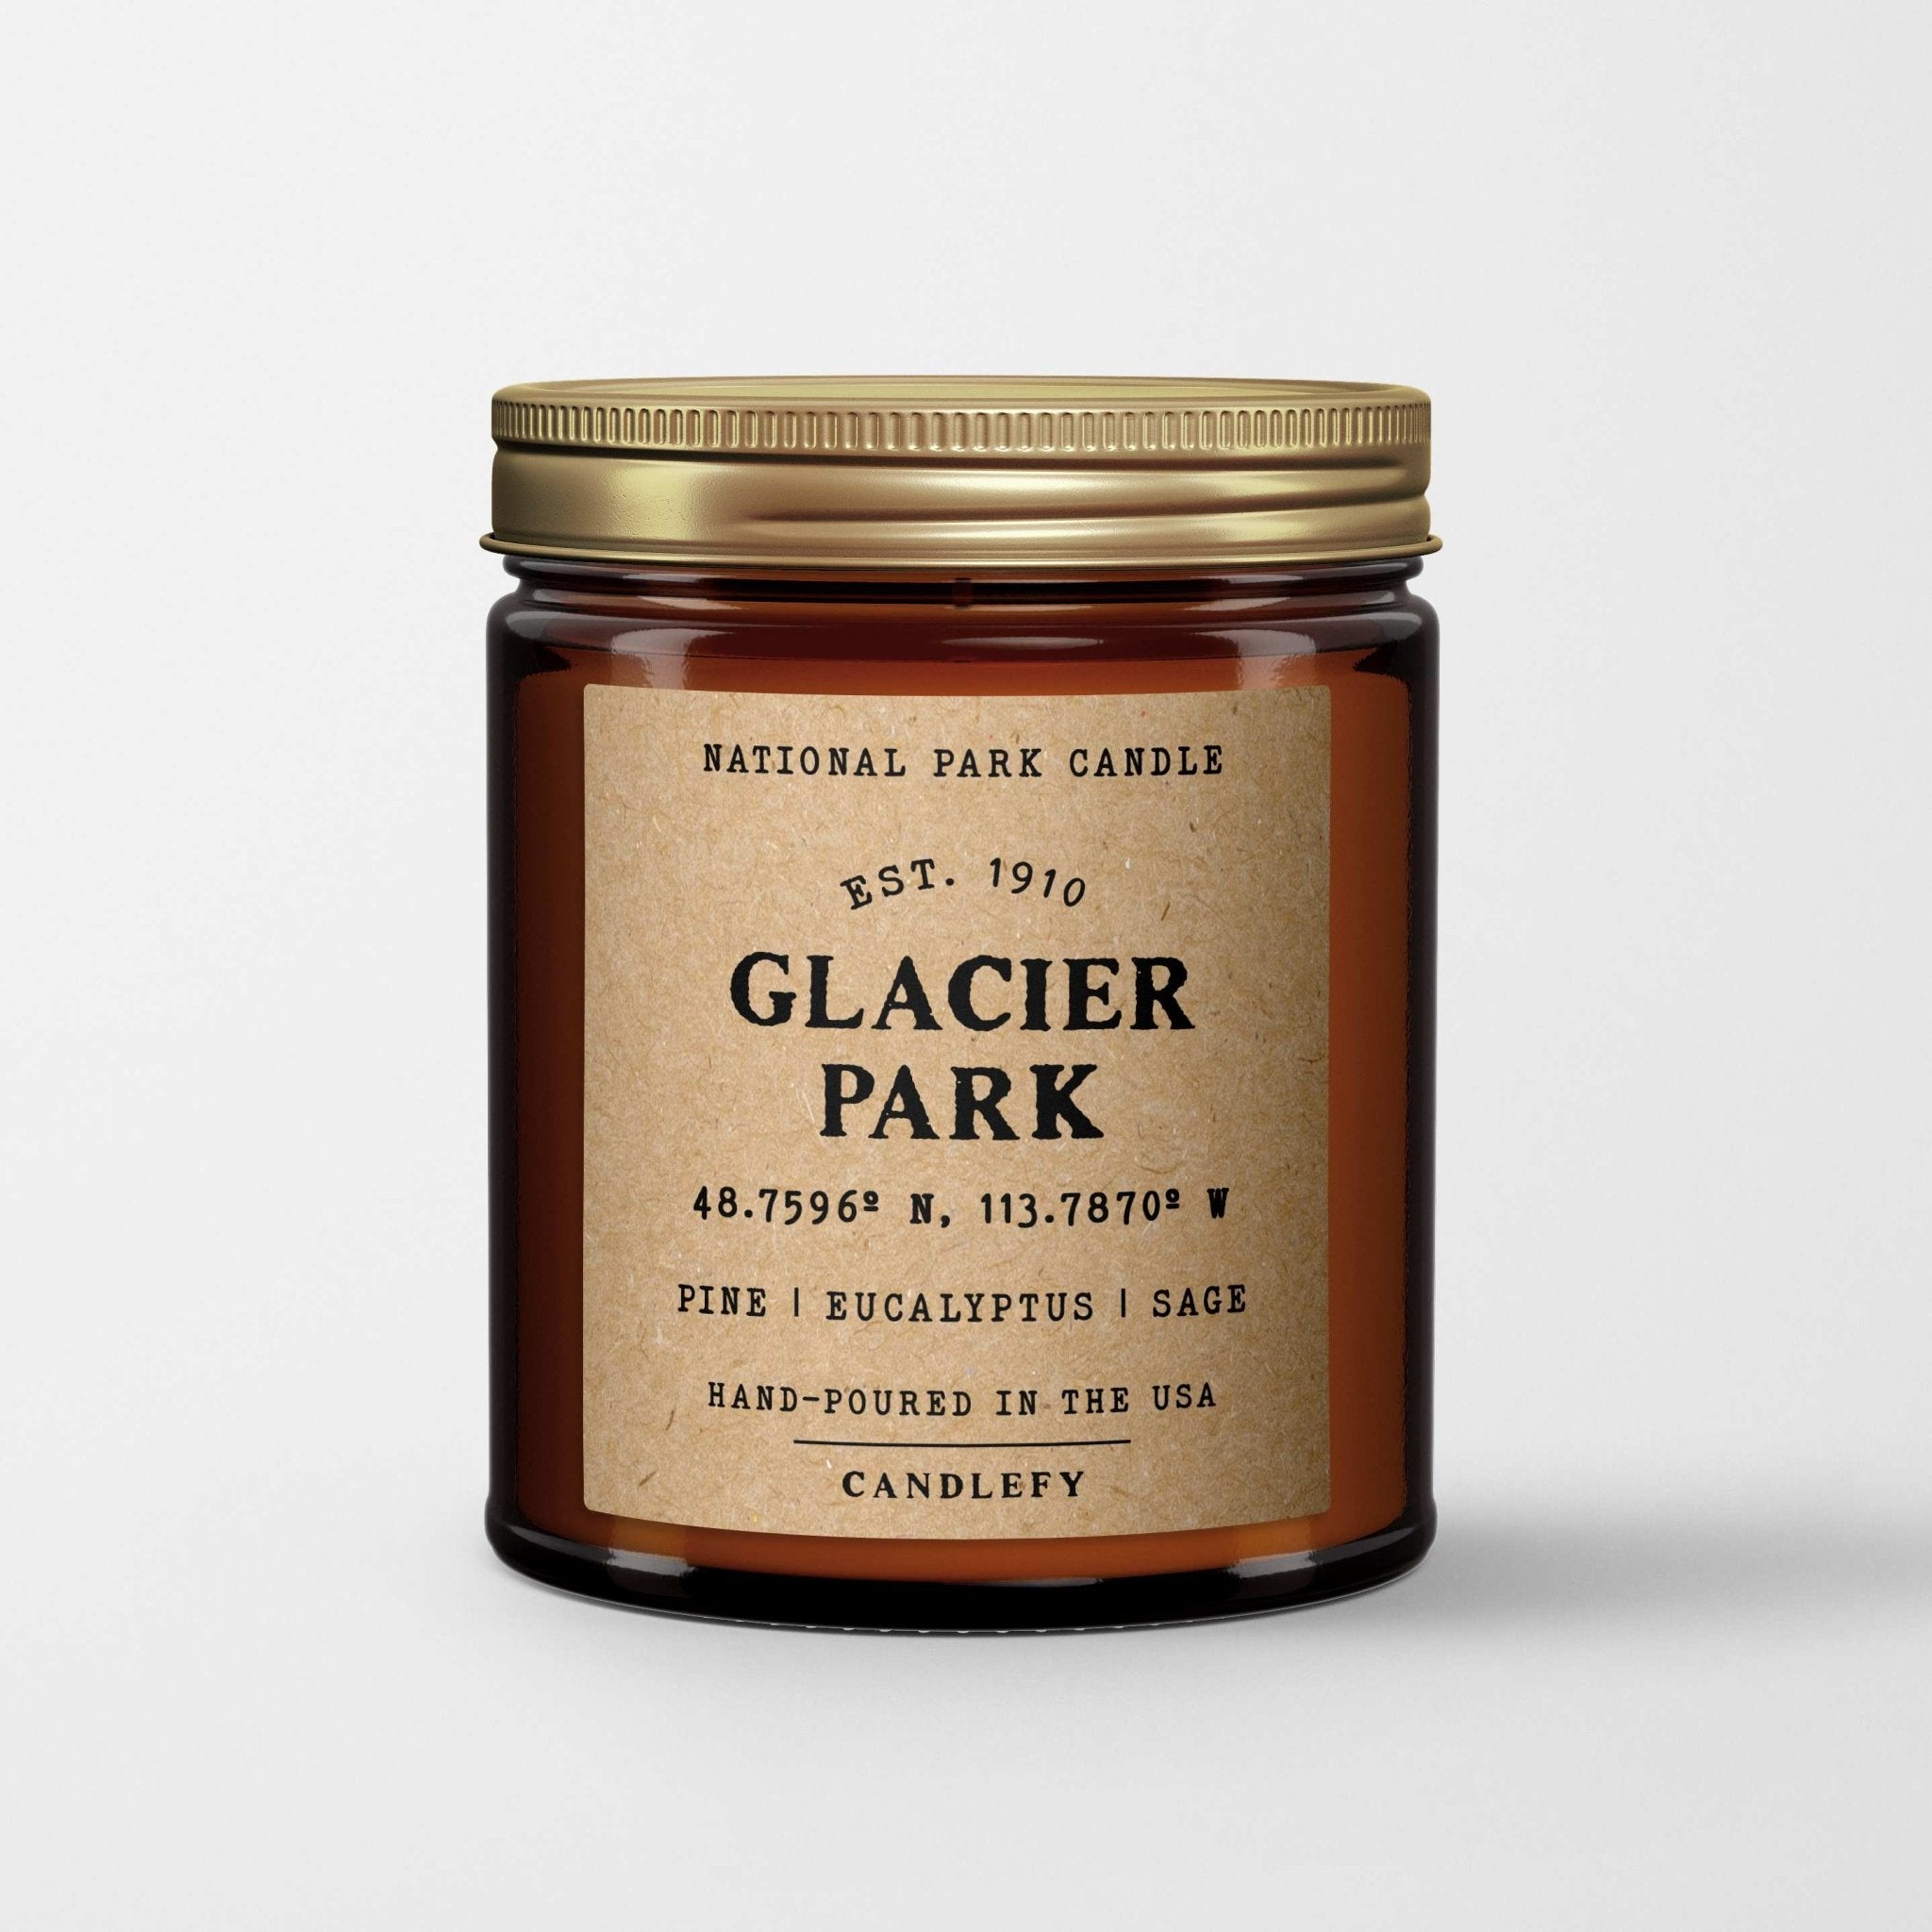 Glacier National Park Candle - Candlefy